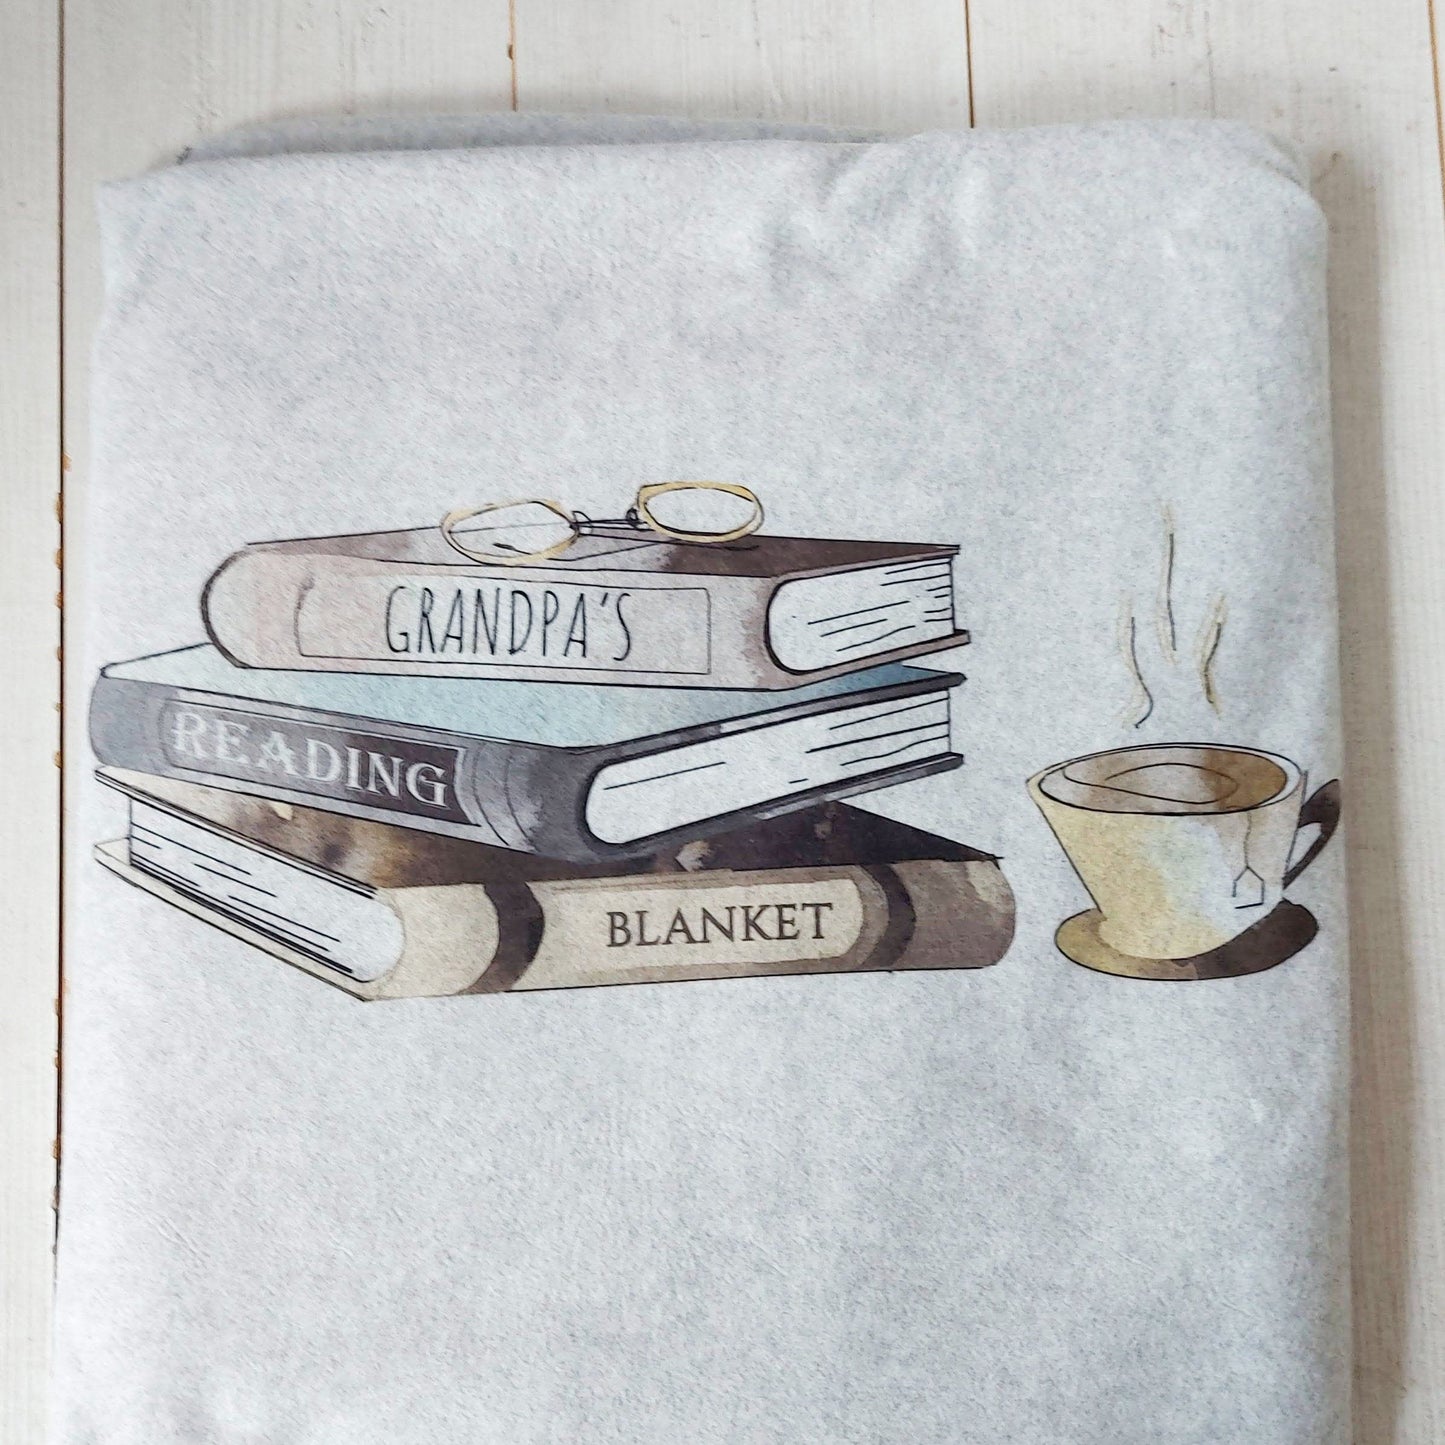 Personalised Reading Blanket